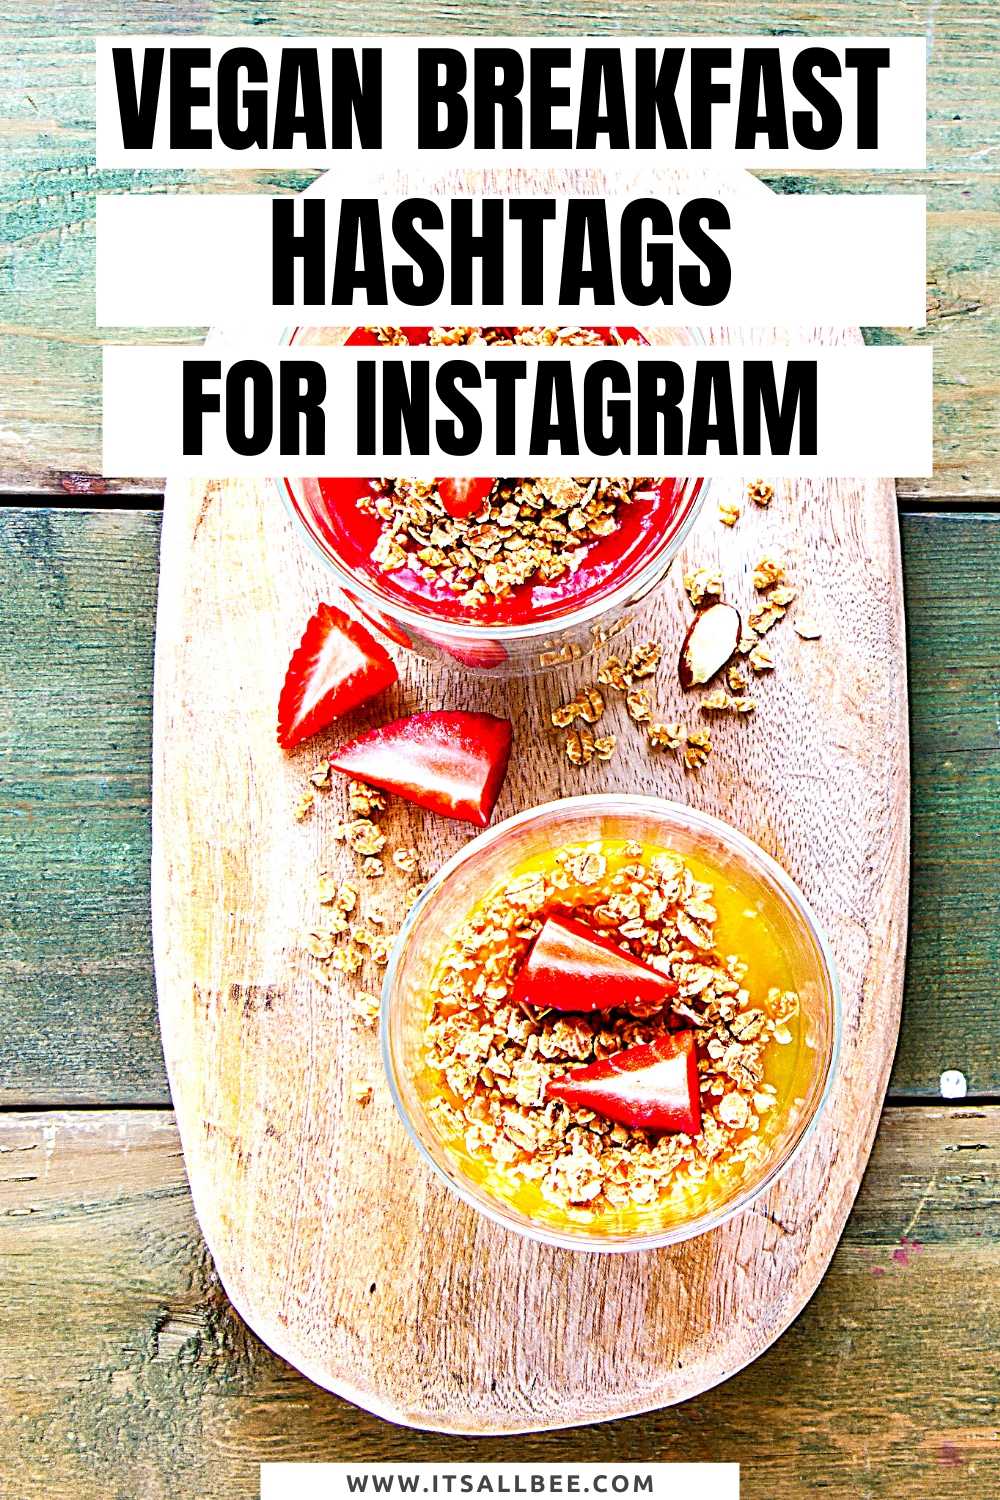 vegan hashtags for likes - vegan breakfast hashtags